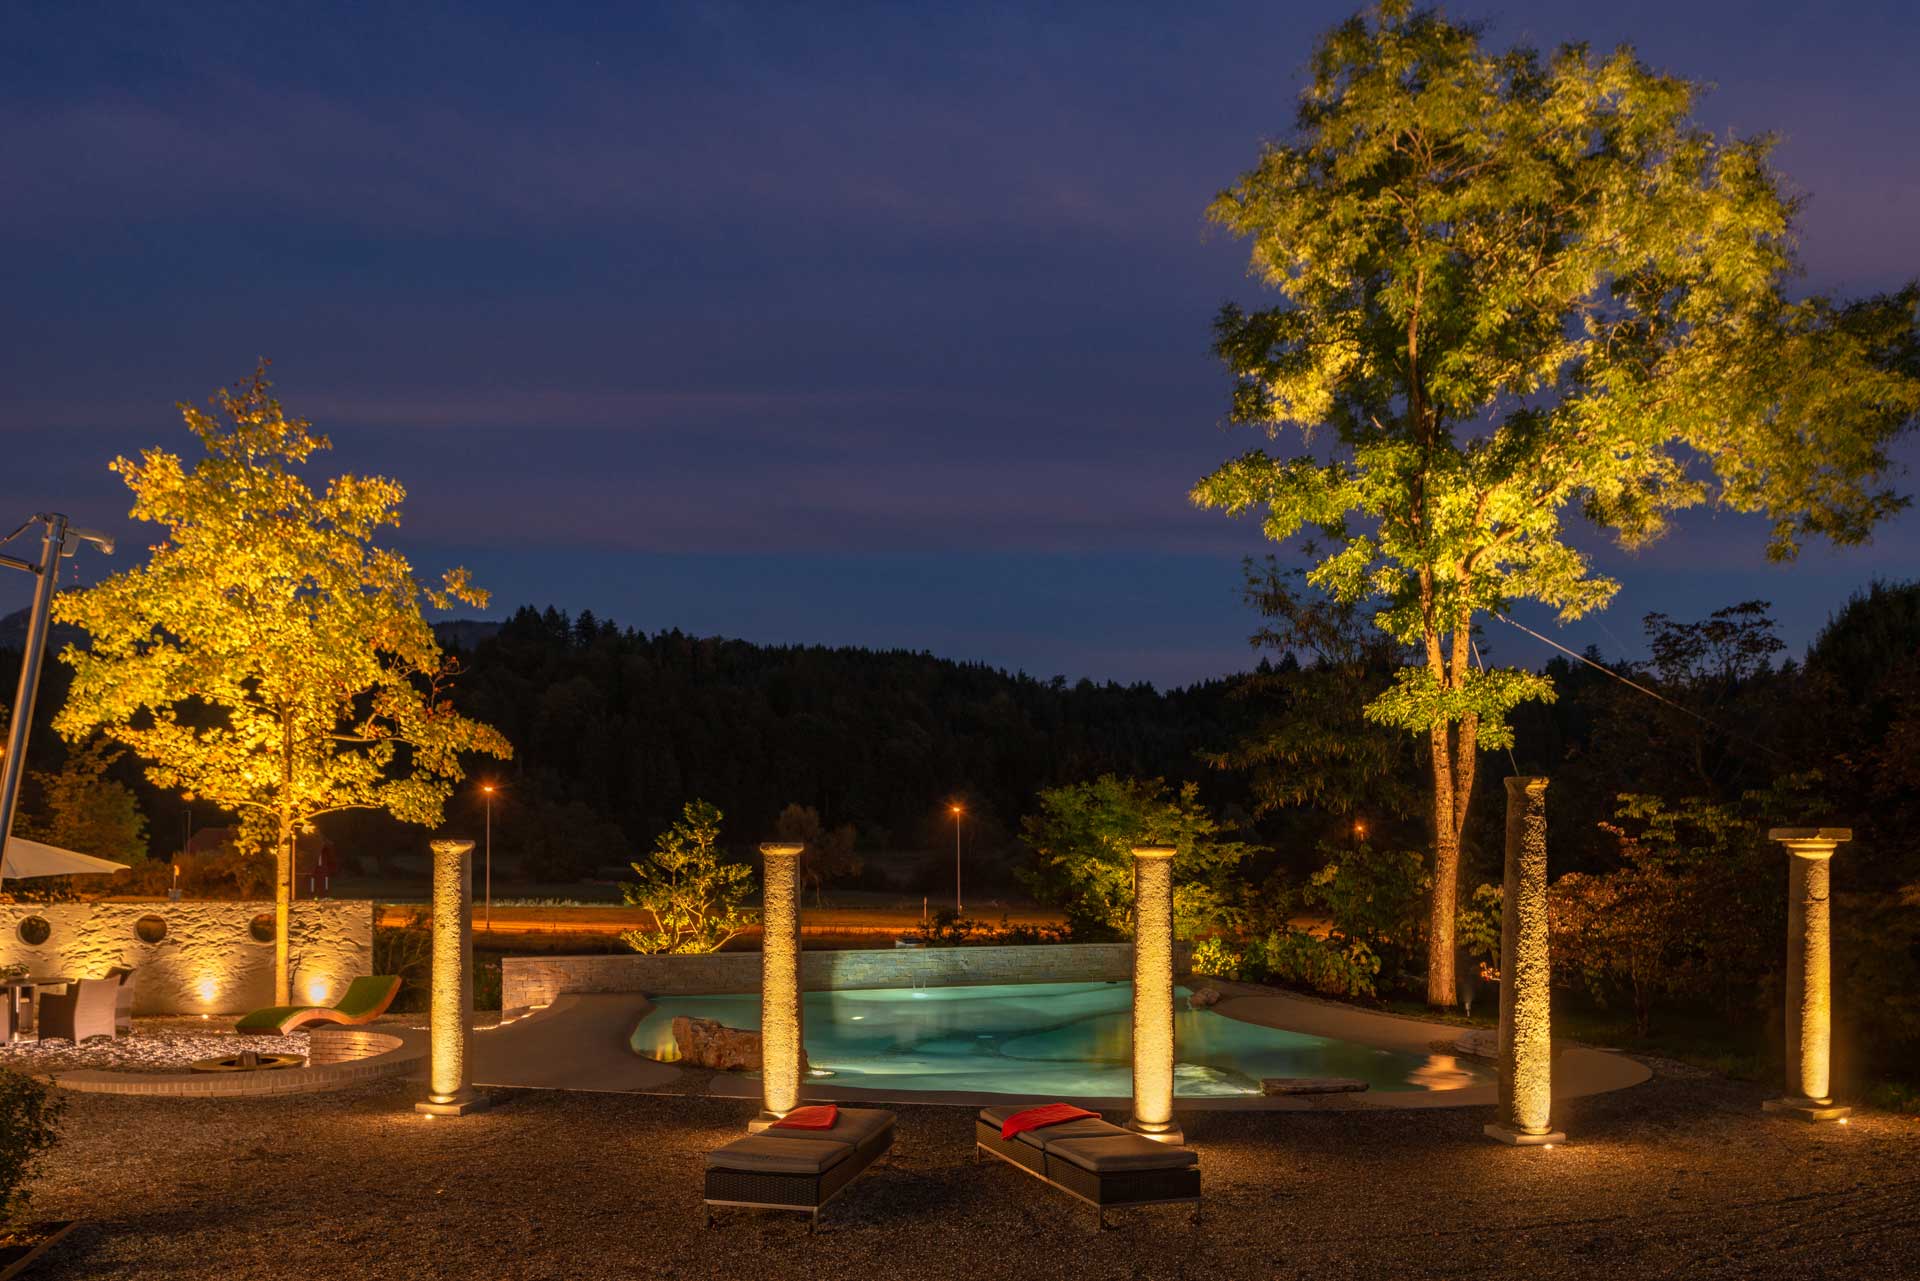 Garten mit südlichem Flair, Säulen sind mit Superspot beleuchtet, ein mit Gigaspot beleuchteter Pool im Hintergrund